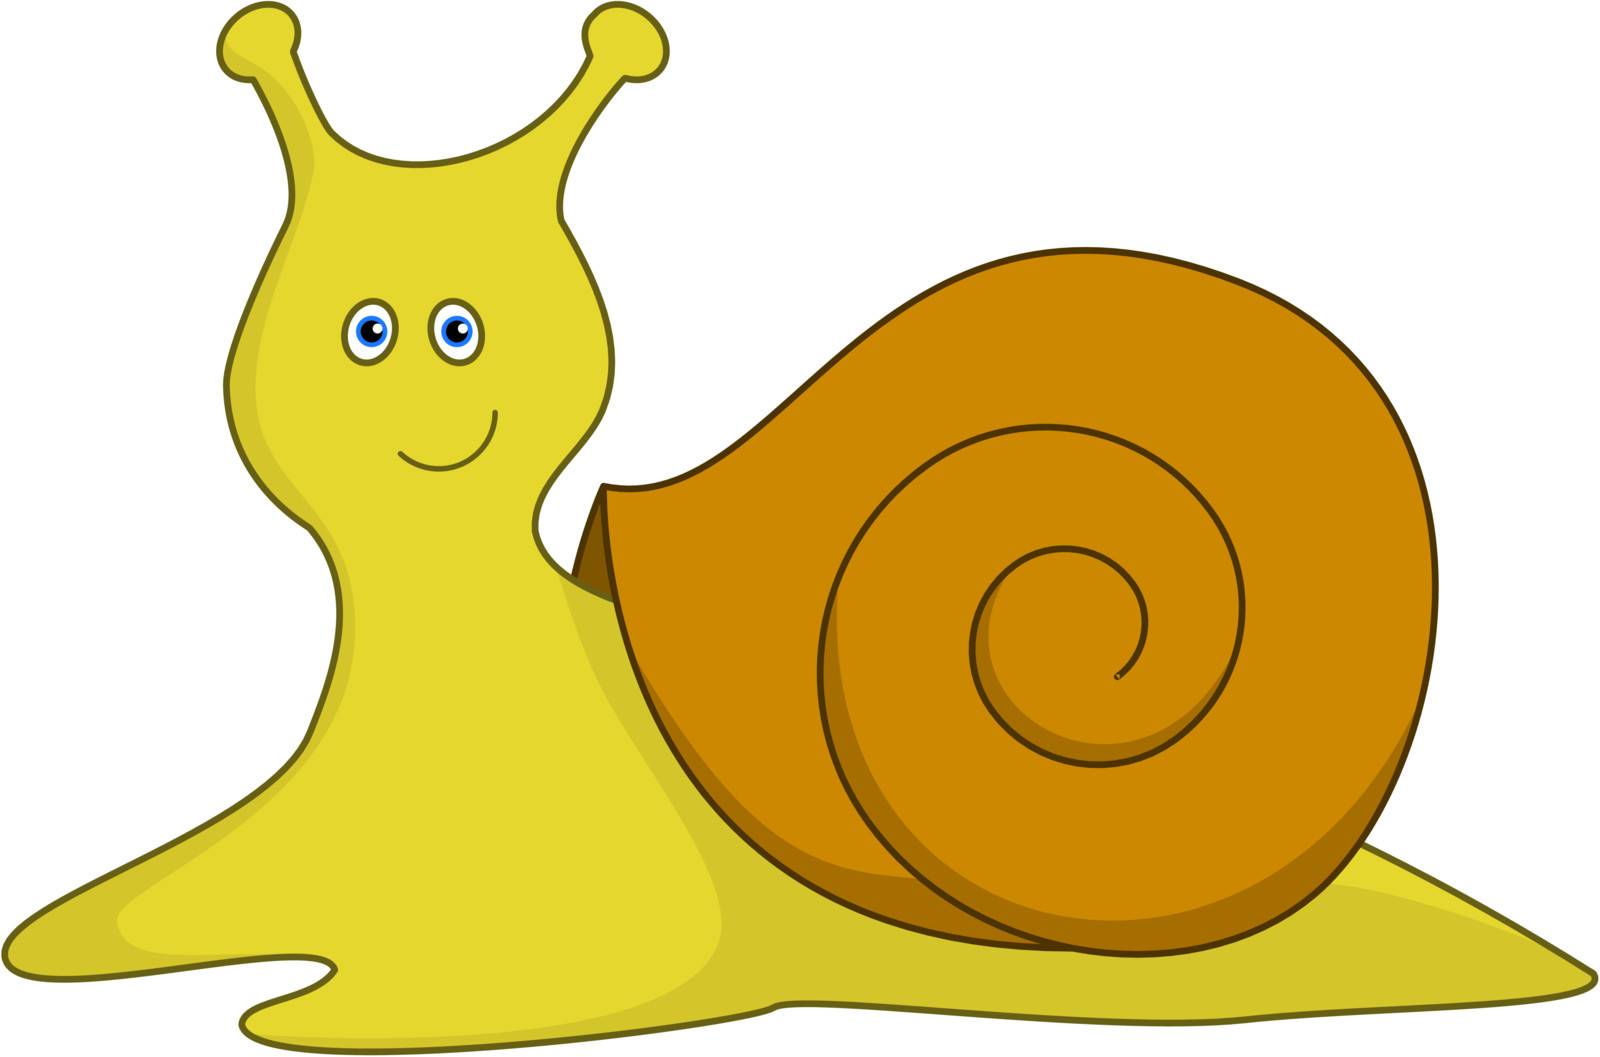 Snail by alexcoolok